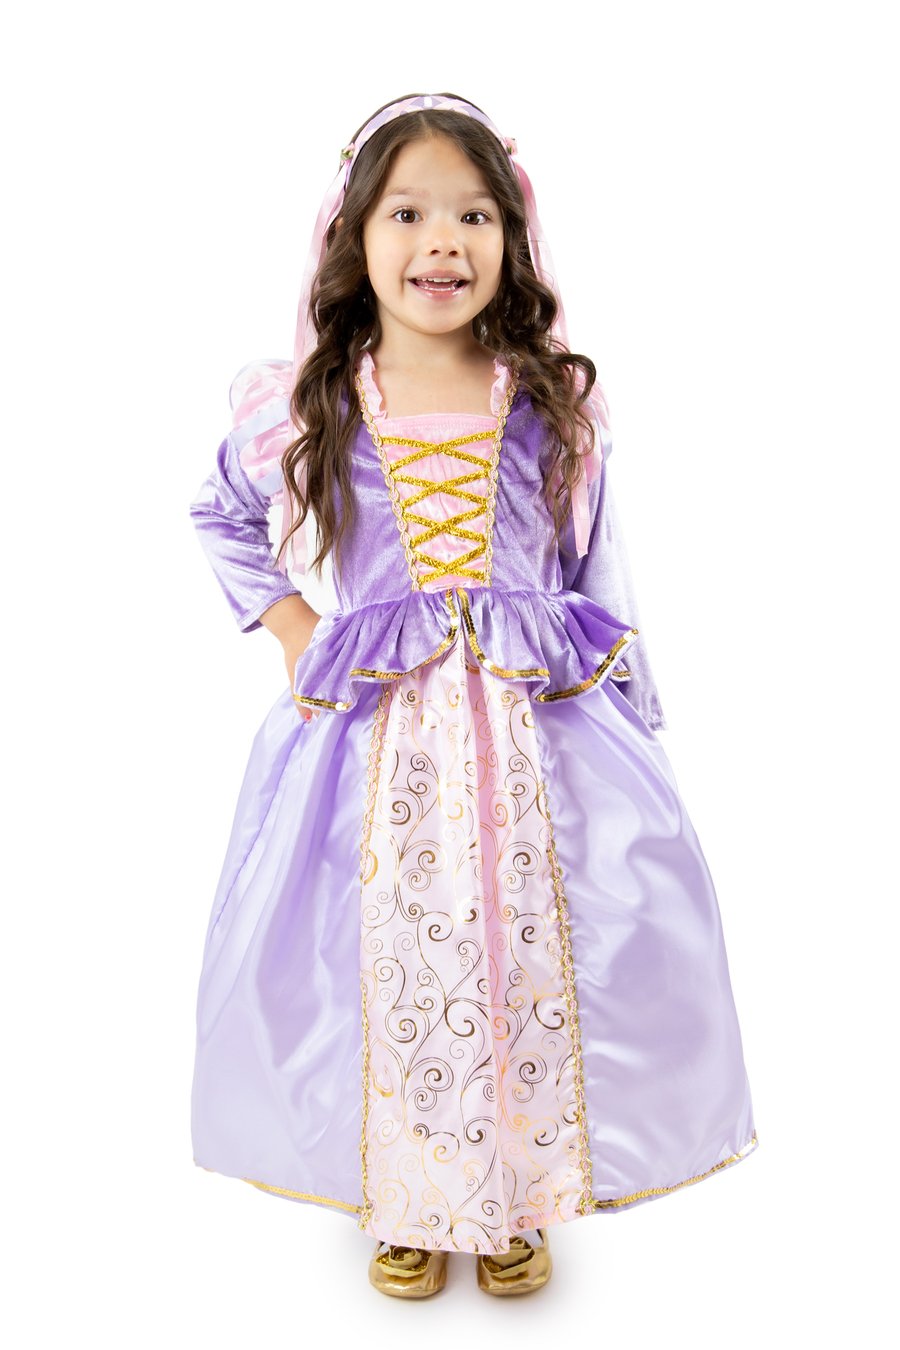 Classic Rapunzel Dress Up Costume